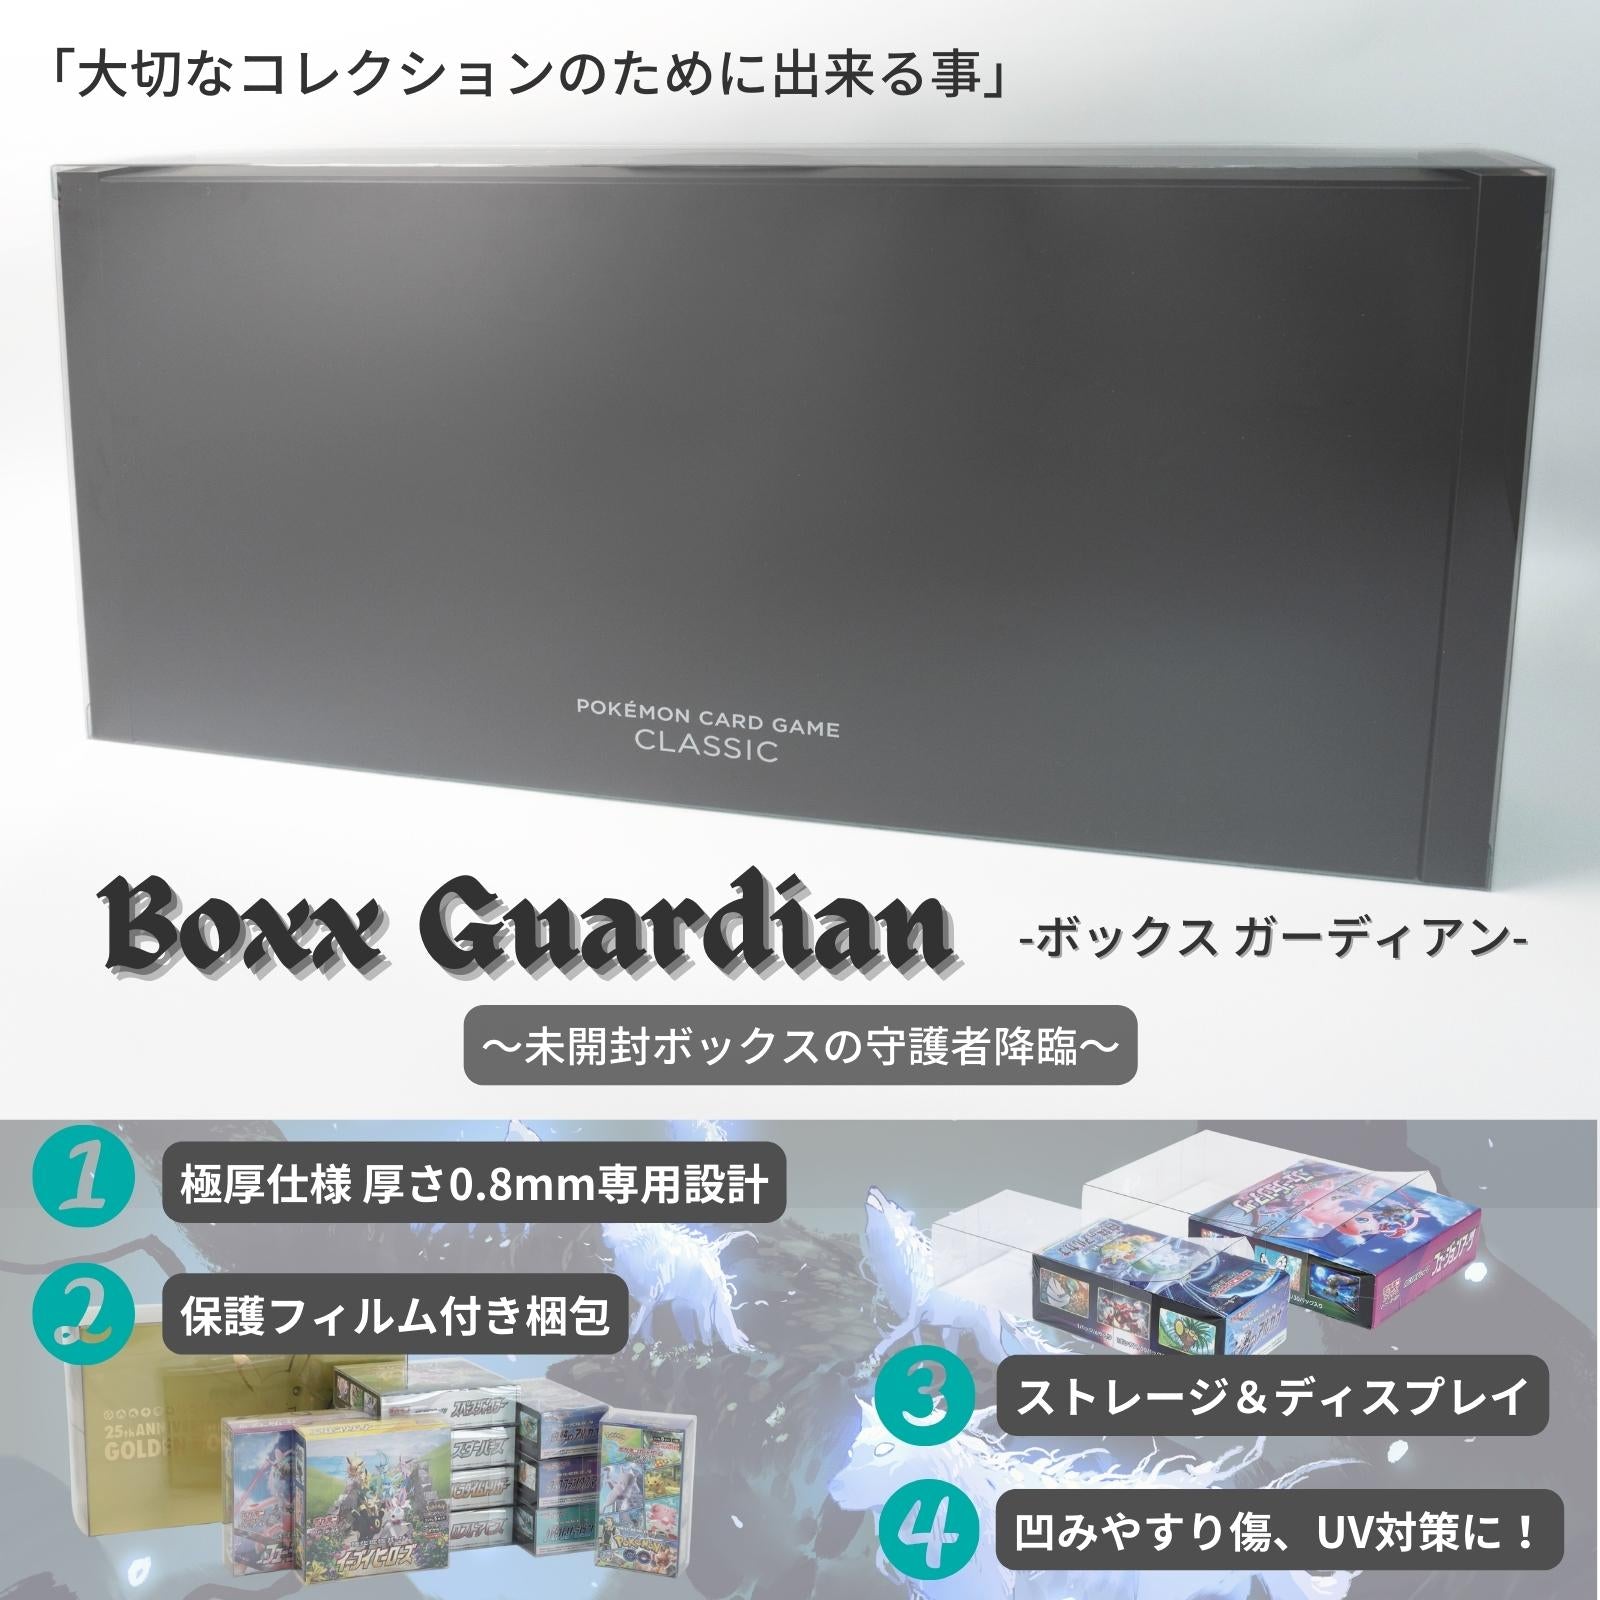 Boxx Guardian ポケモンカードBOX用 ポケモンカードゲーム Classic